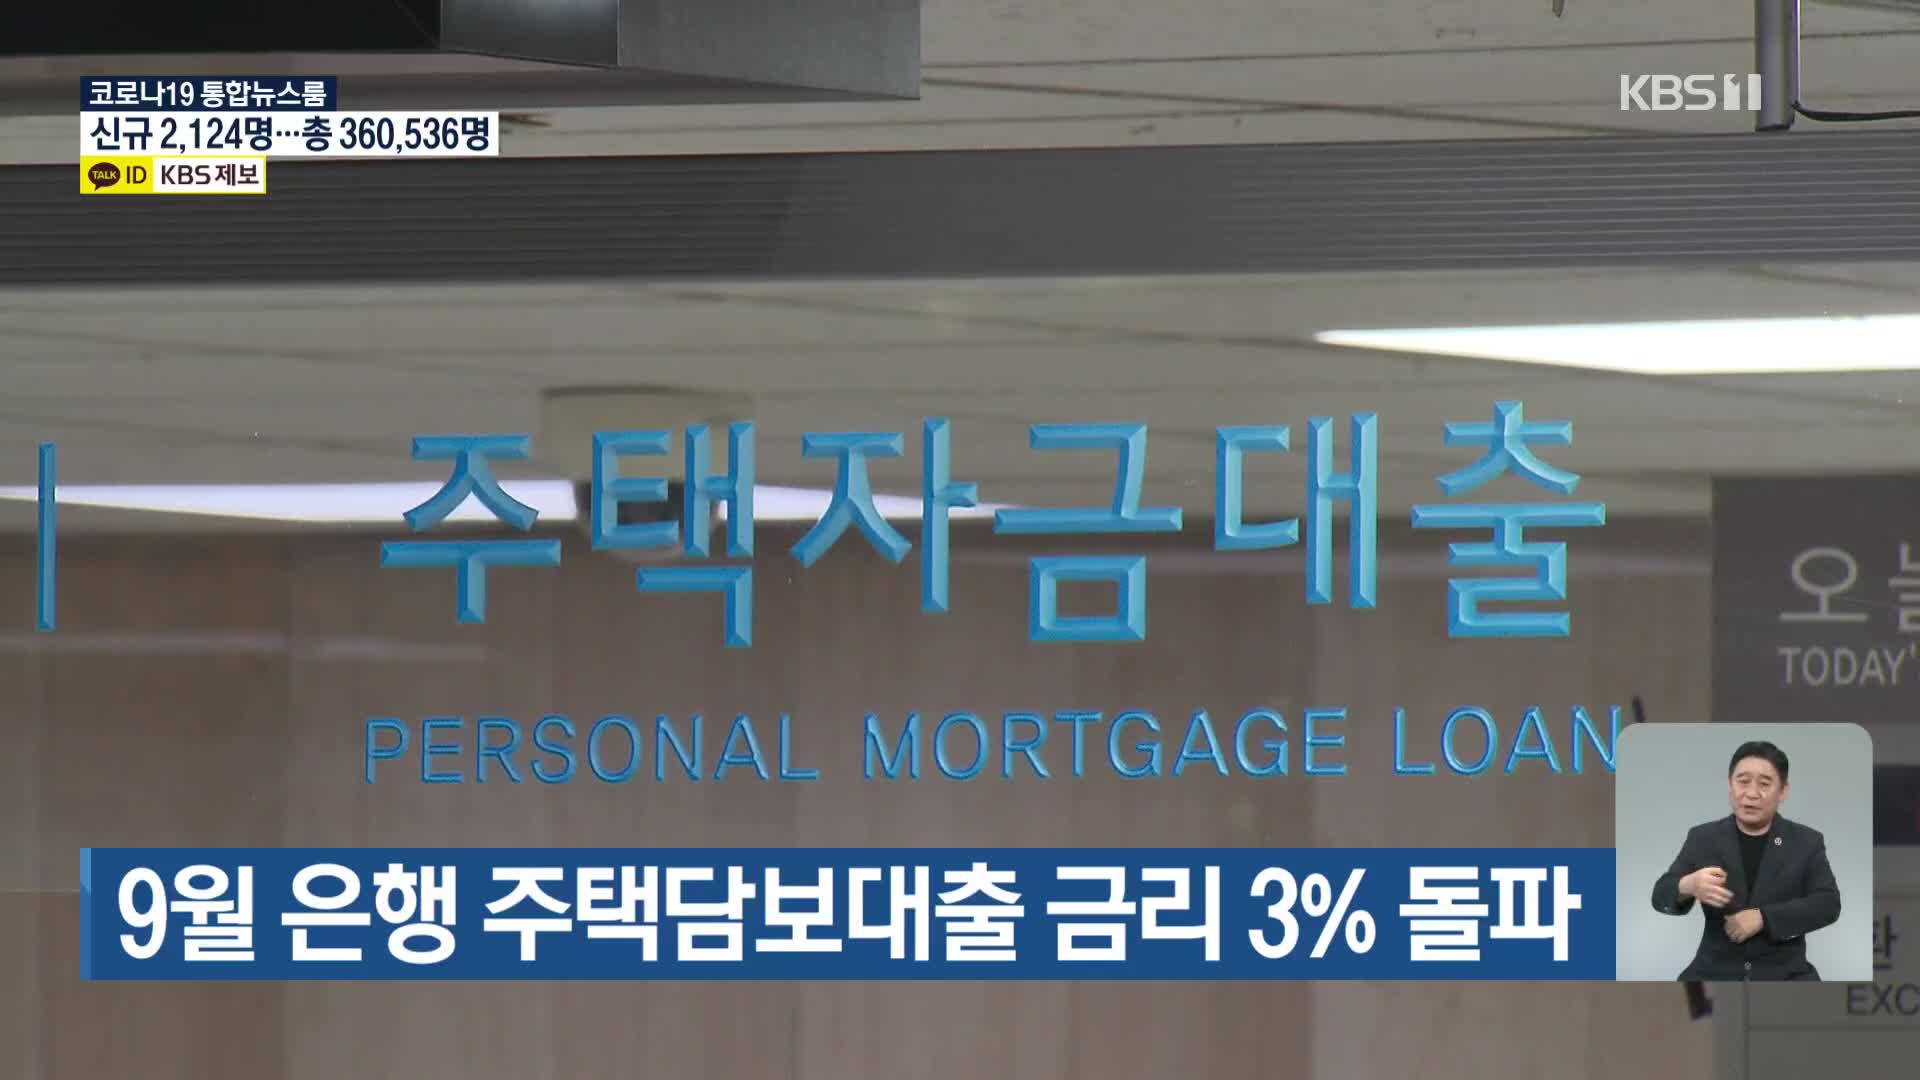 9월 은행 주택담보대출 금리 3% 돌파